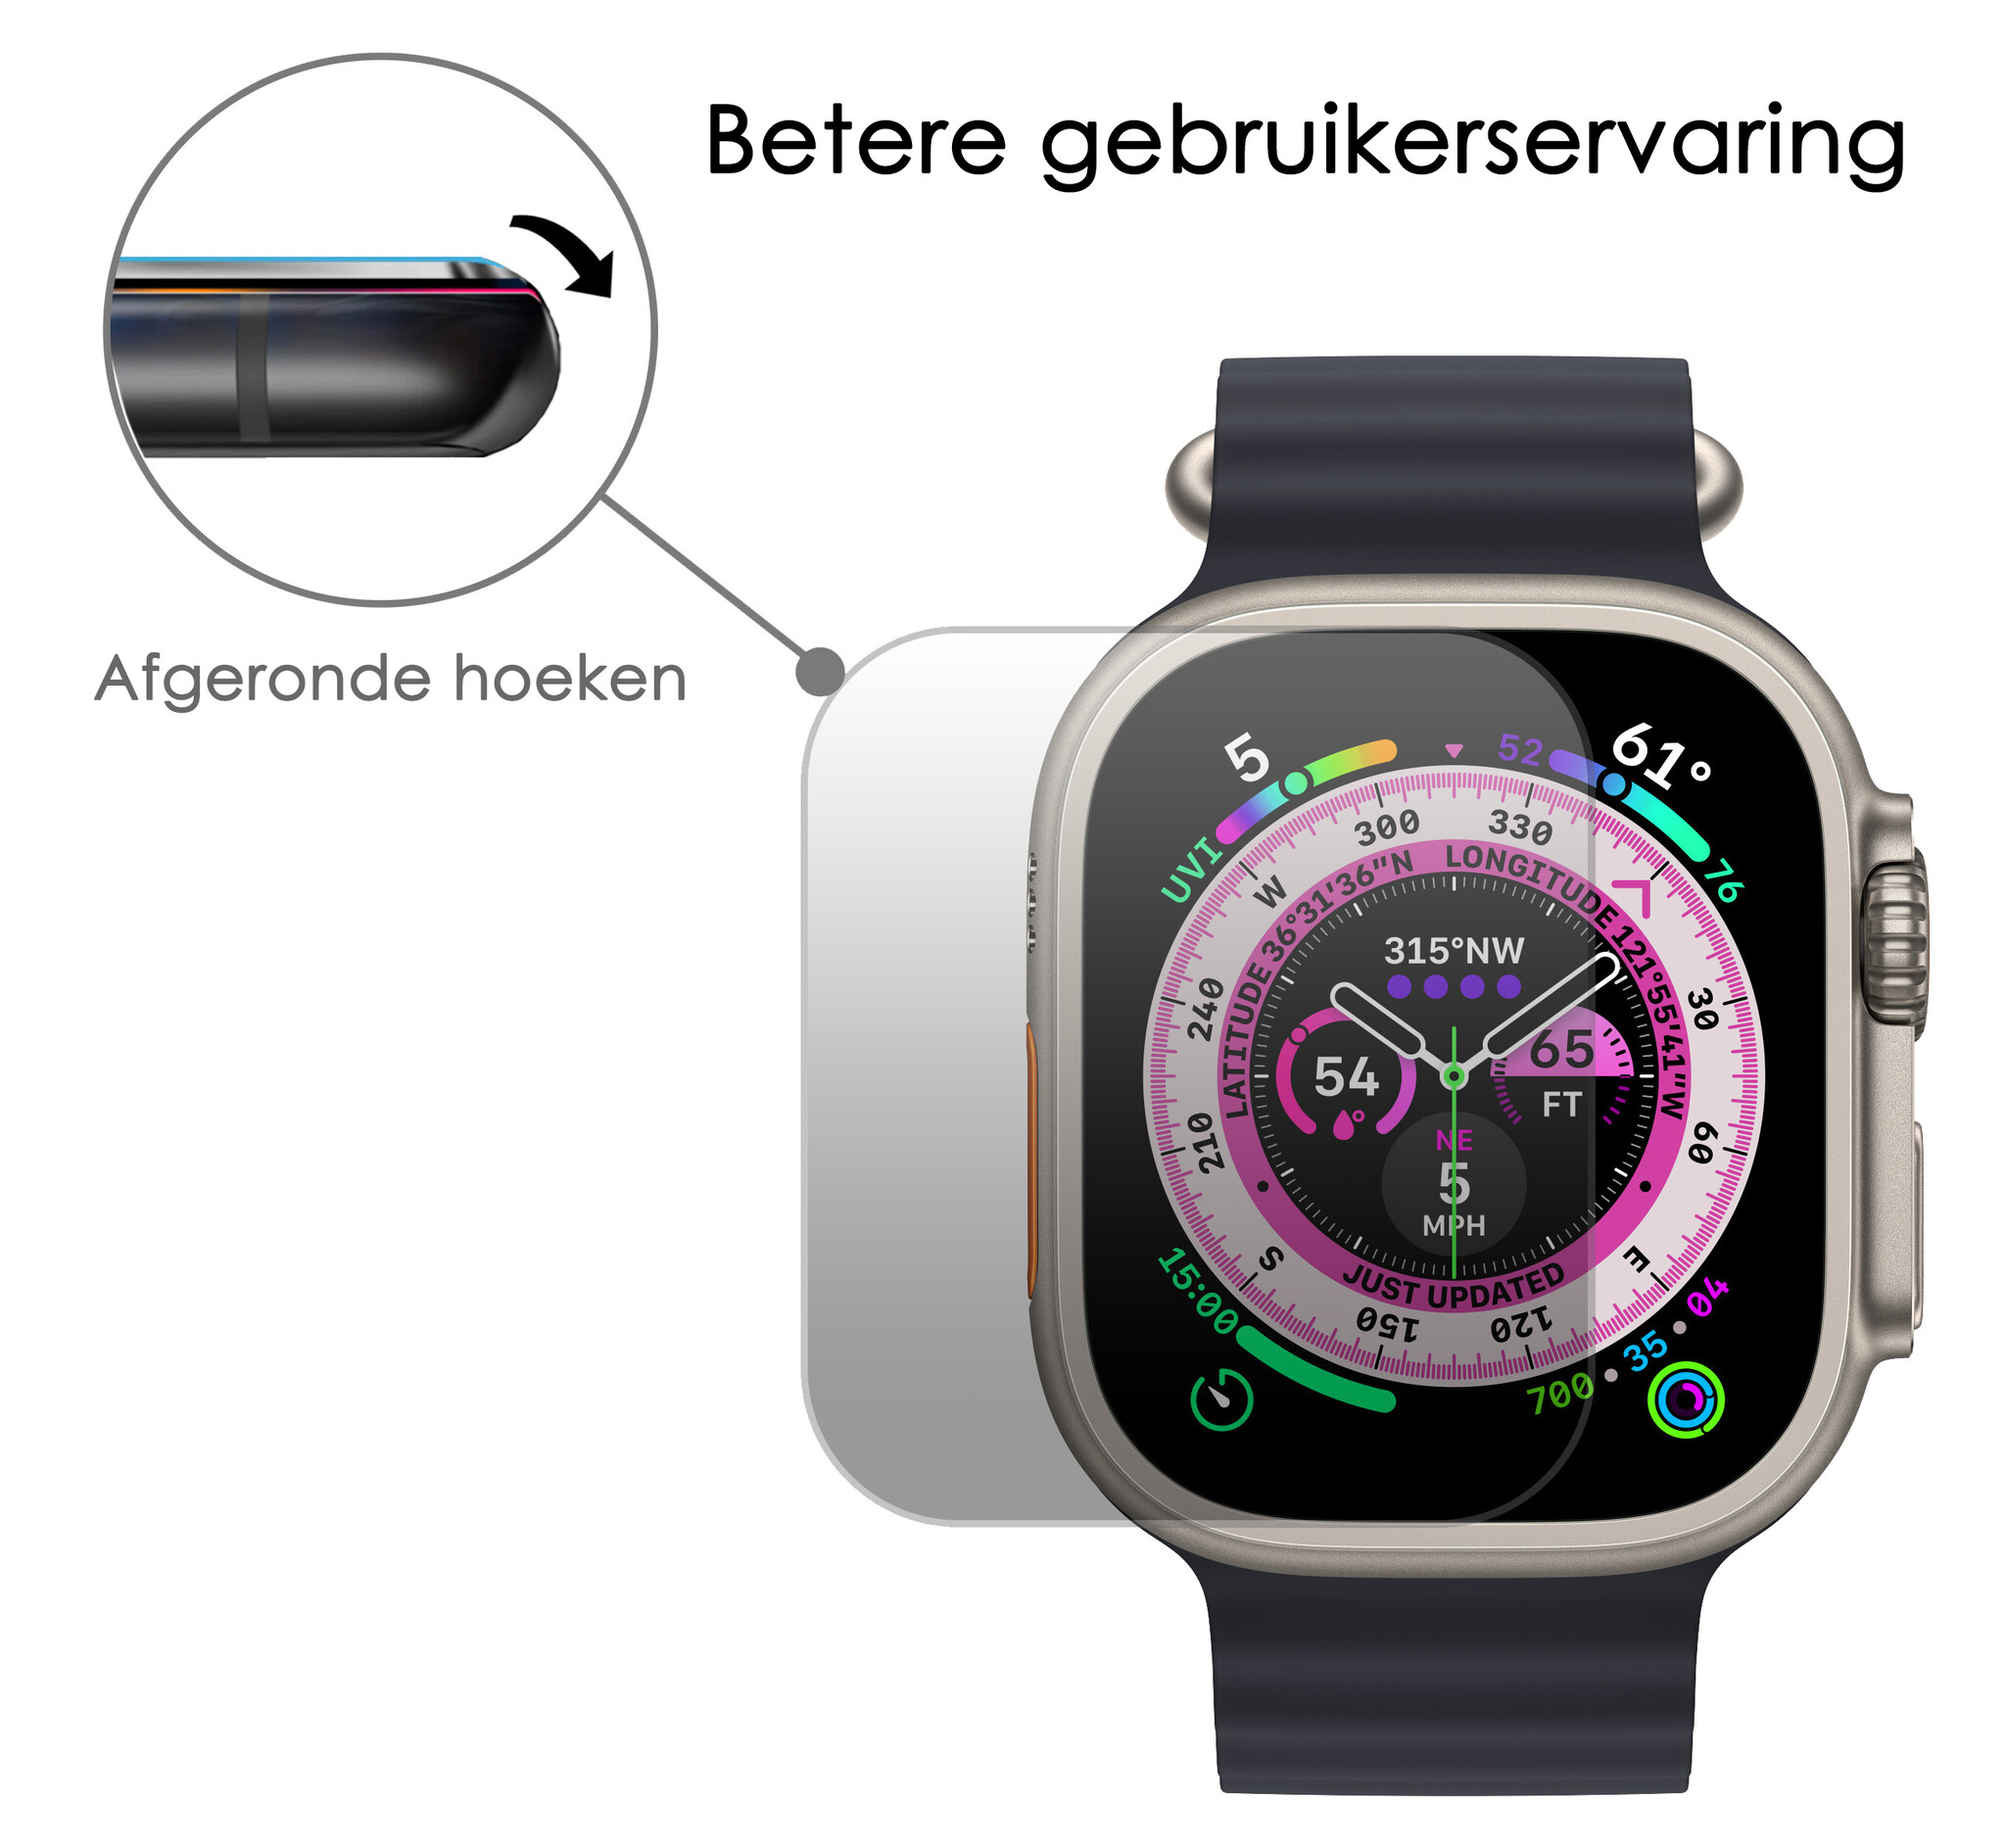 NoXx Screenprotector voor Apple Watch Ultra 2 Screenprotector Tempered Glass Beschermglas - Apple Watch Ultra 2 Screen Protector